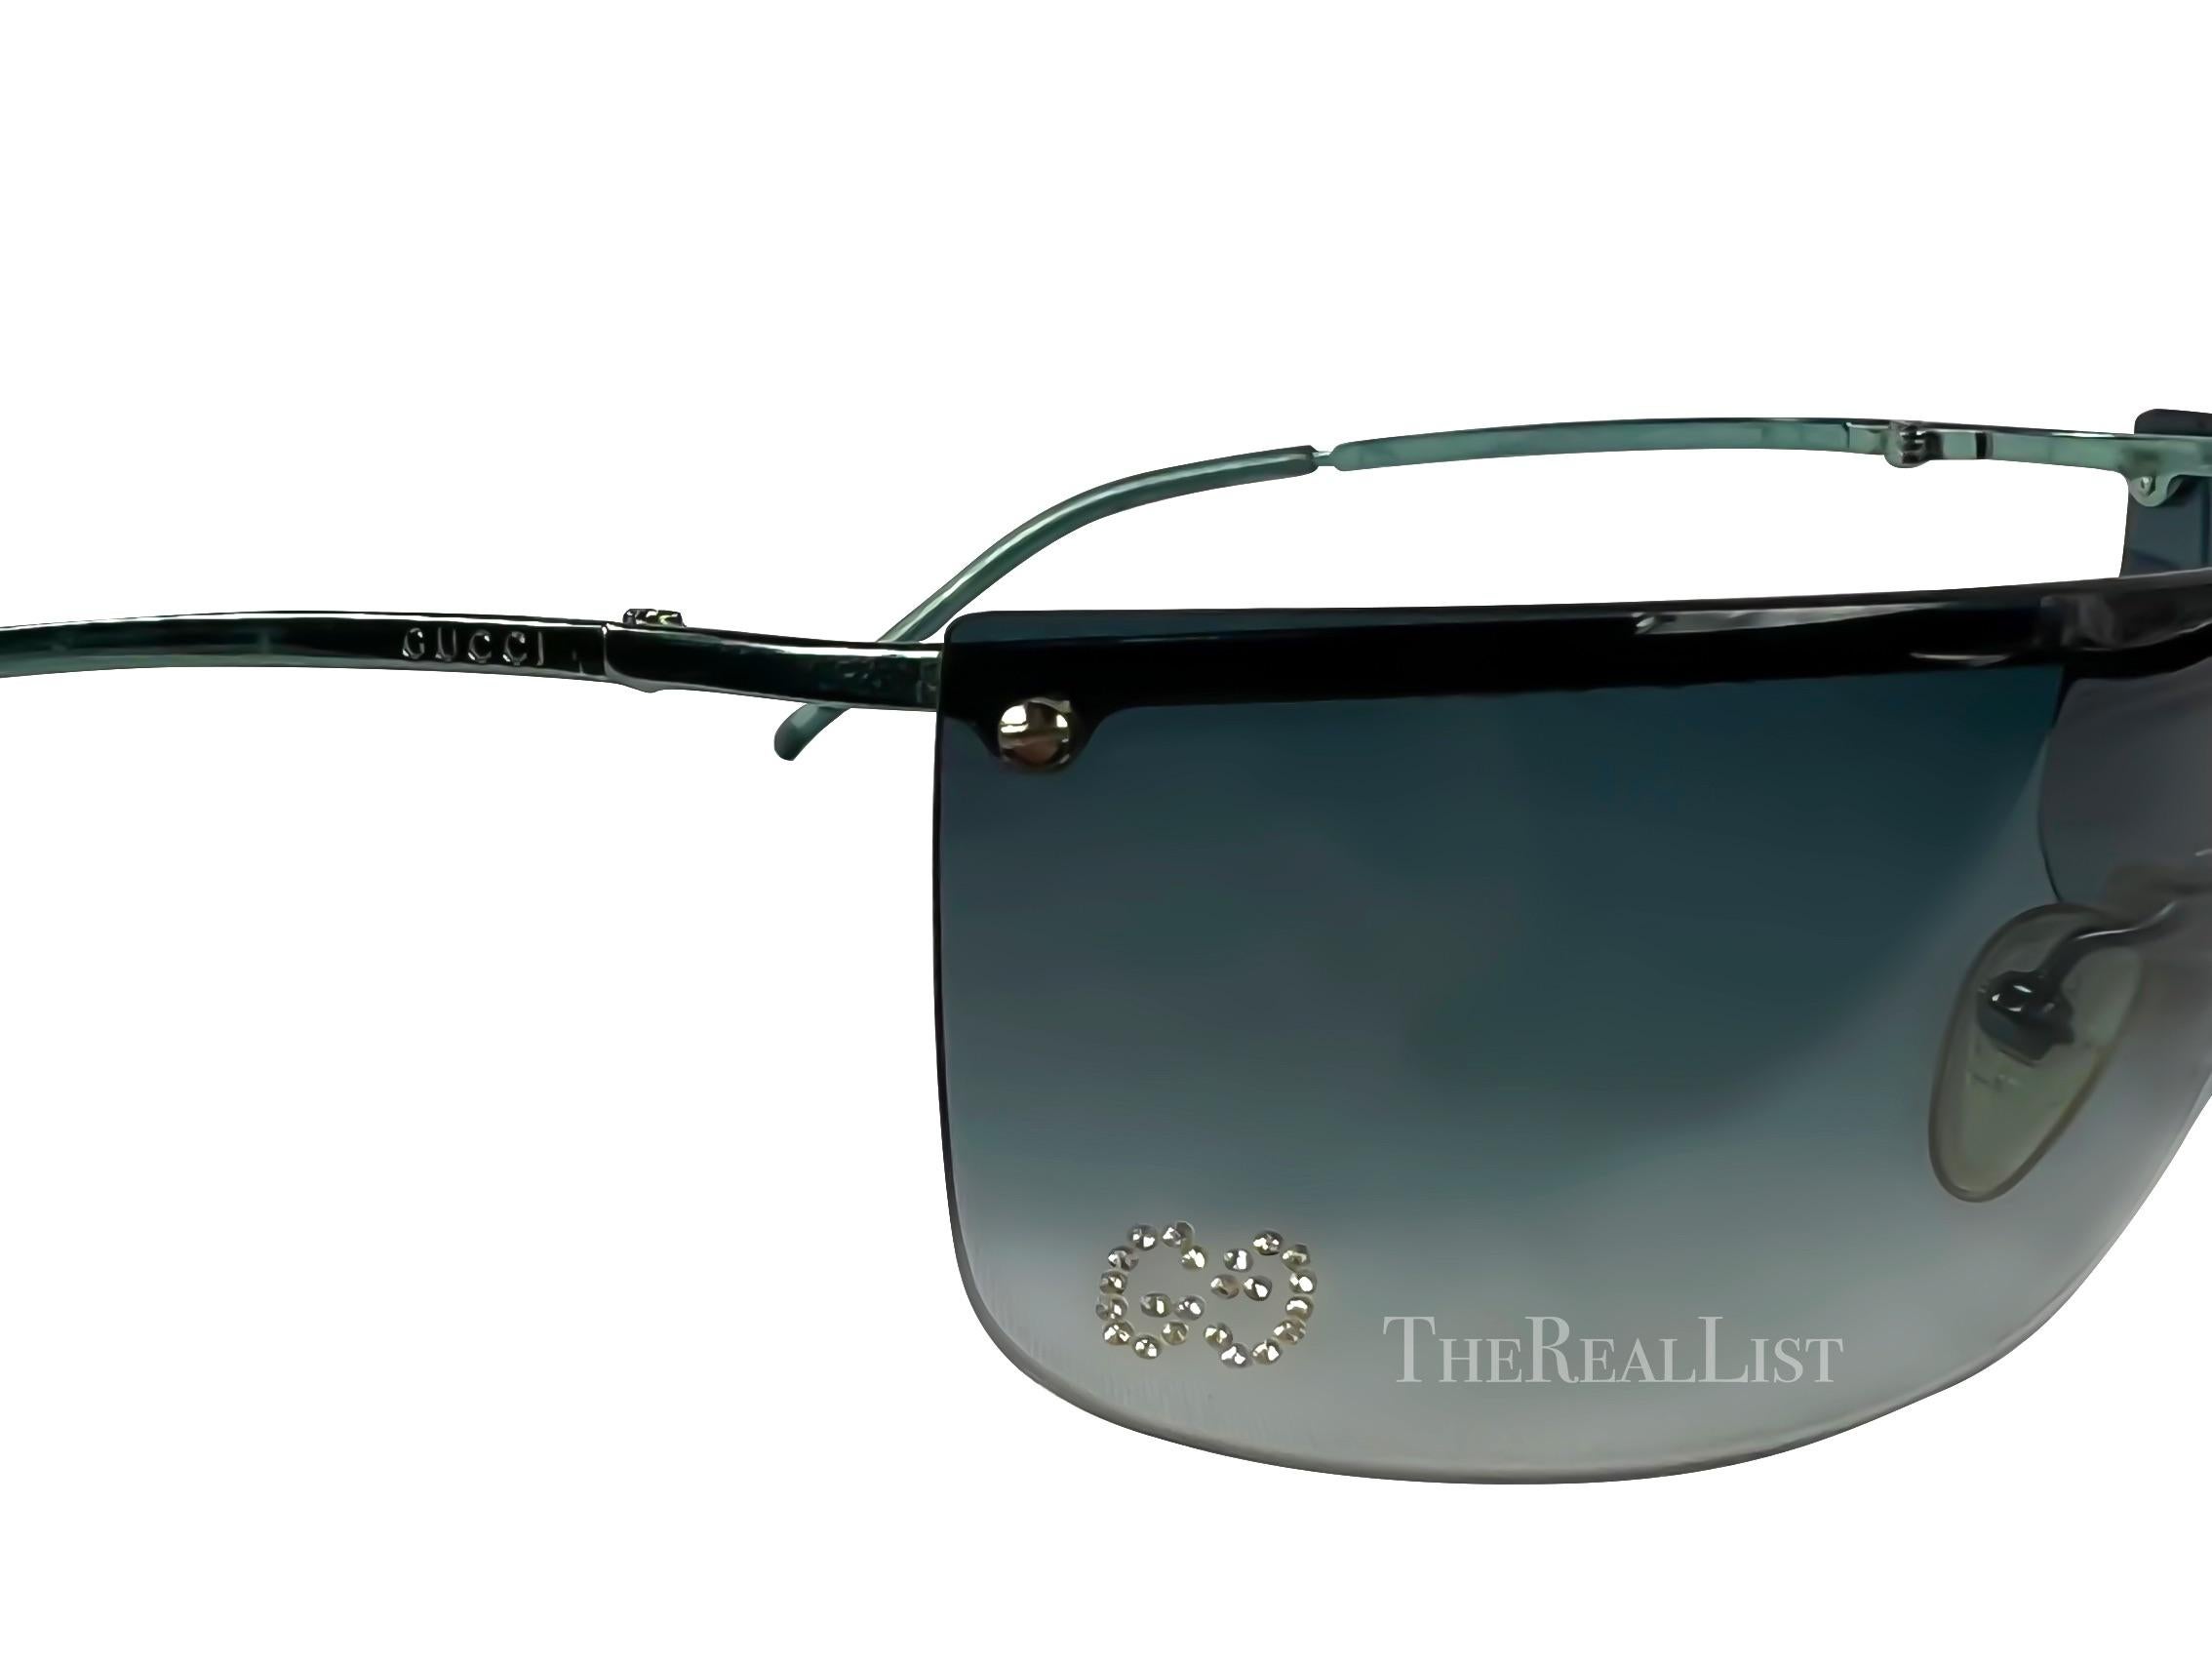 Wir präsentieren eine fabelhafte, randlose Gucci-Sonnenbrille in Golf-Optik, entworfen von Tom Ford. Mit ihrer zeitlosen Ausstrahlung ist diese ultra-schicke Sonnenbrille ein Muss für jede Sammlung. Das randlose Design strahlt moderne Eleganz aus,